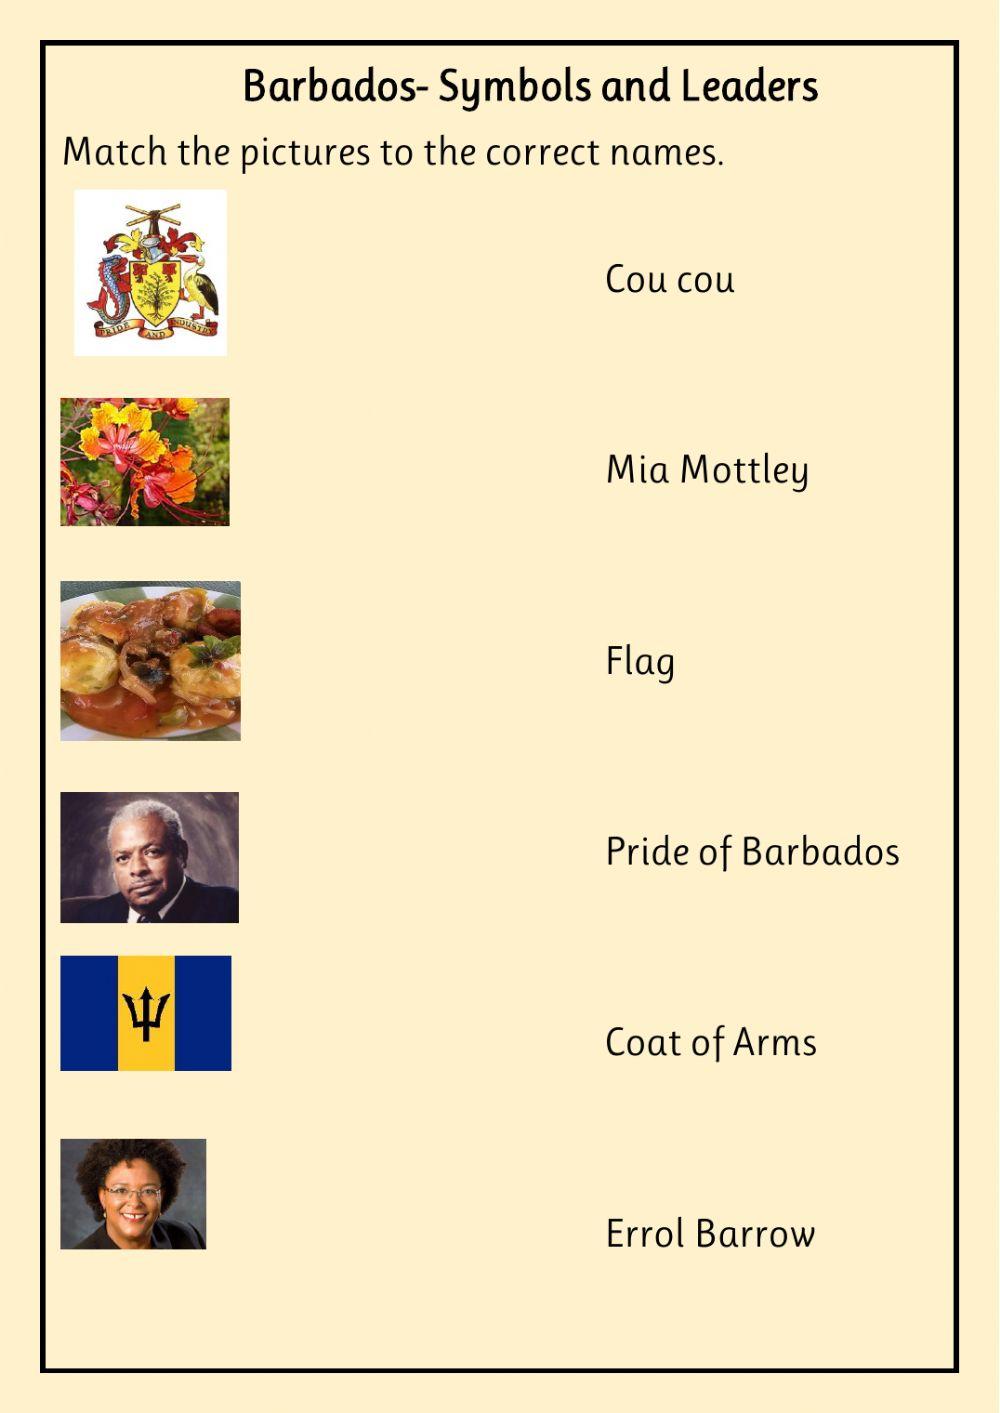 Barbados symbols